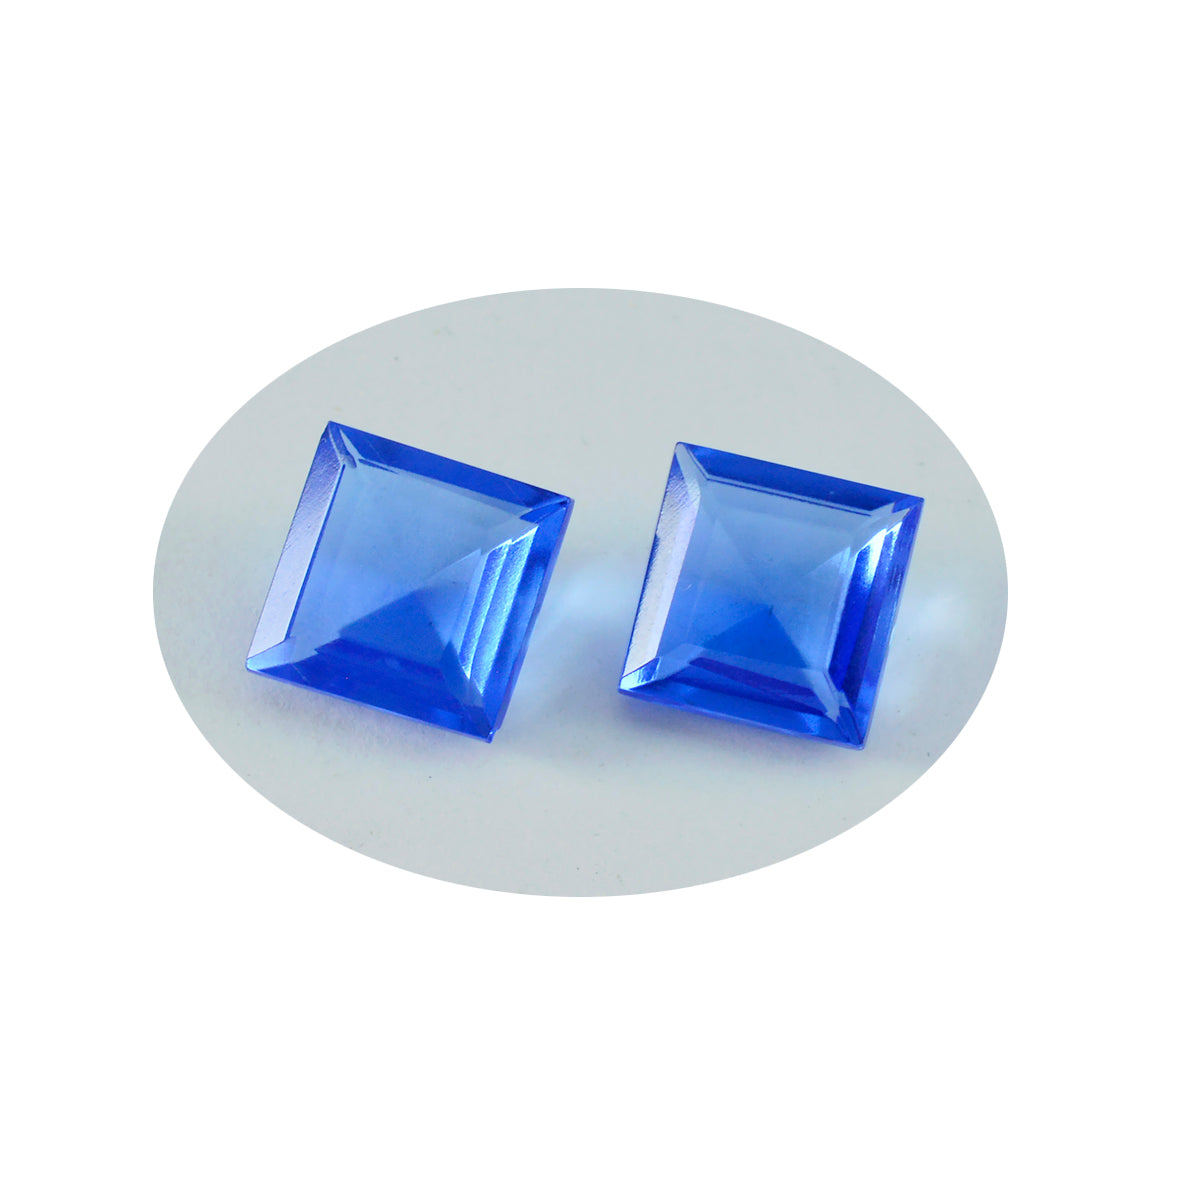 riyogems 1шт синий сапфир cz ограненный 13x13 мм квадратная форма отличное качество свободный драгоценный камень